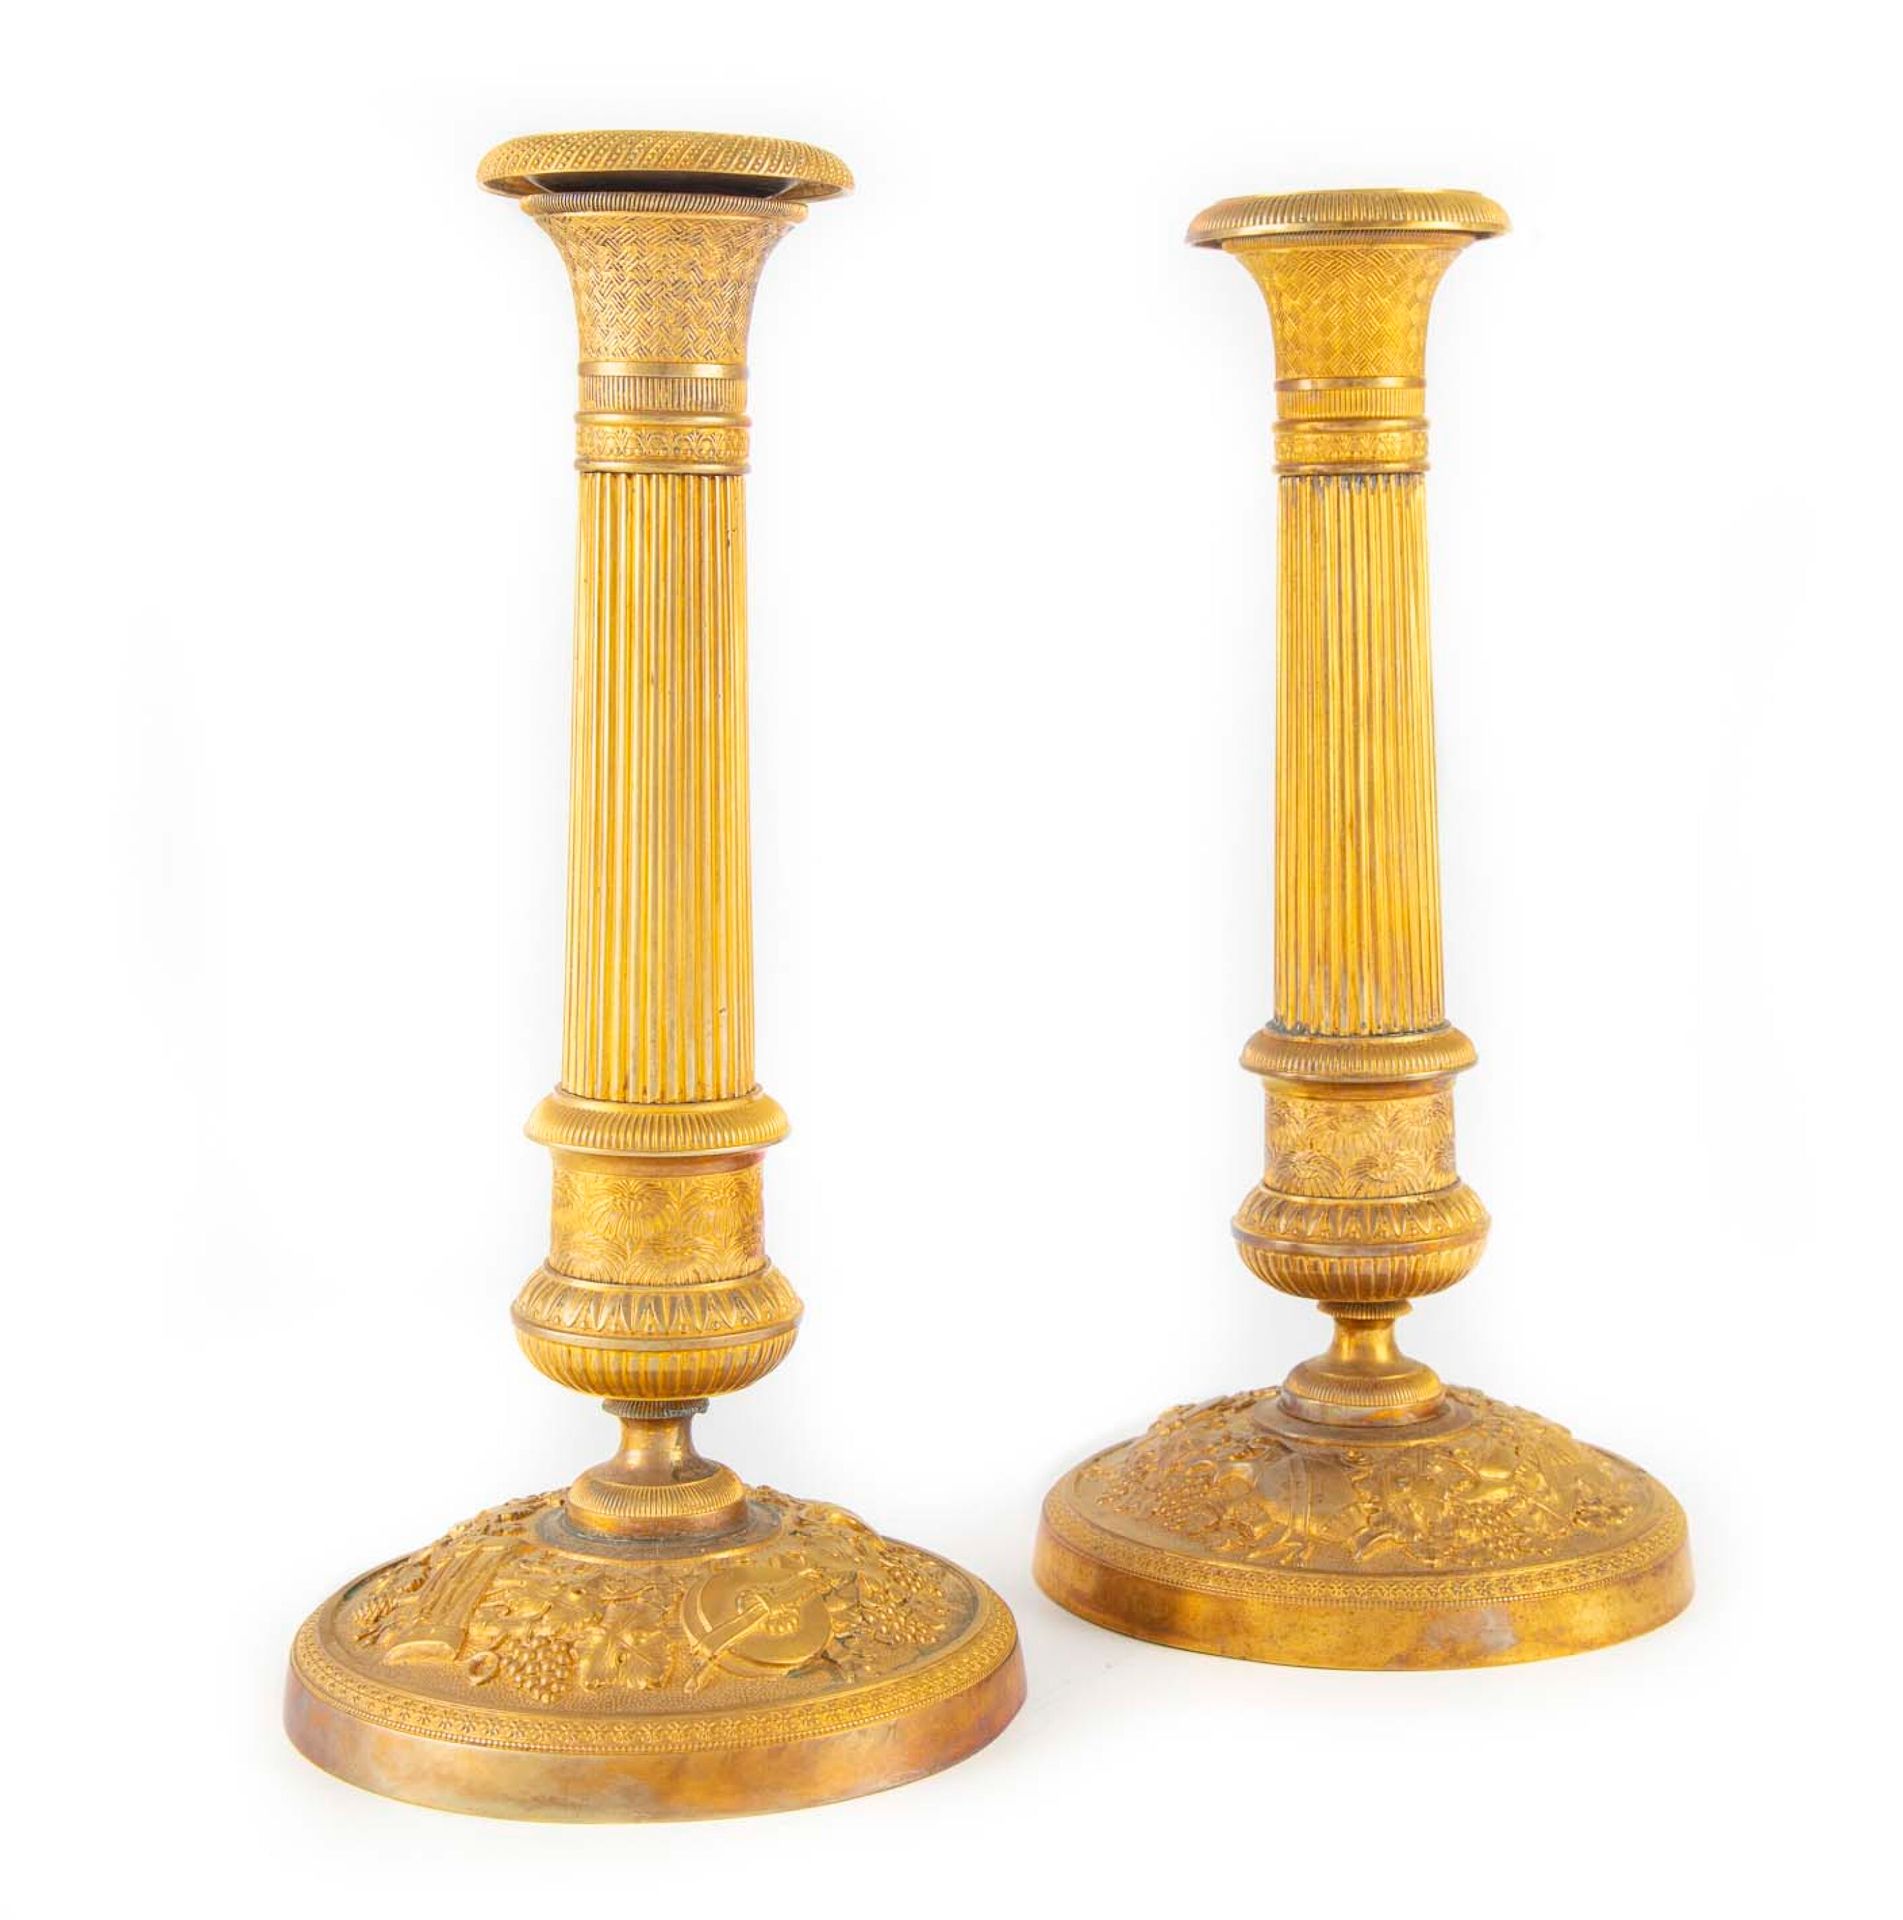 Null 一对鎏金青铜烛台，刻有丰富的叶子、辫子和说明葡萄酒的元素

19世纪中叶

H.24.5厘米